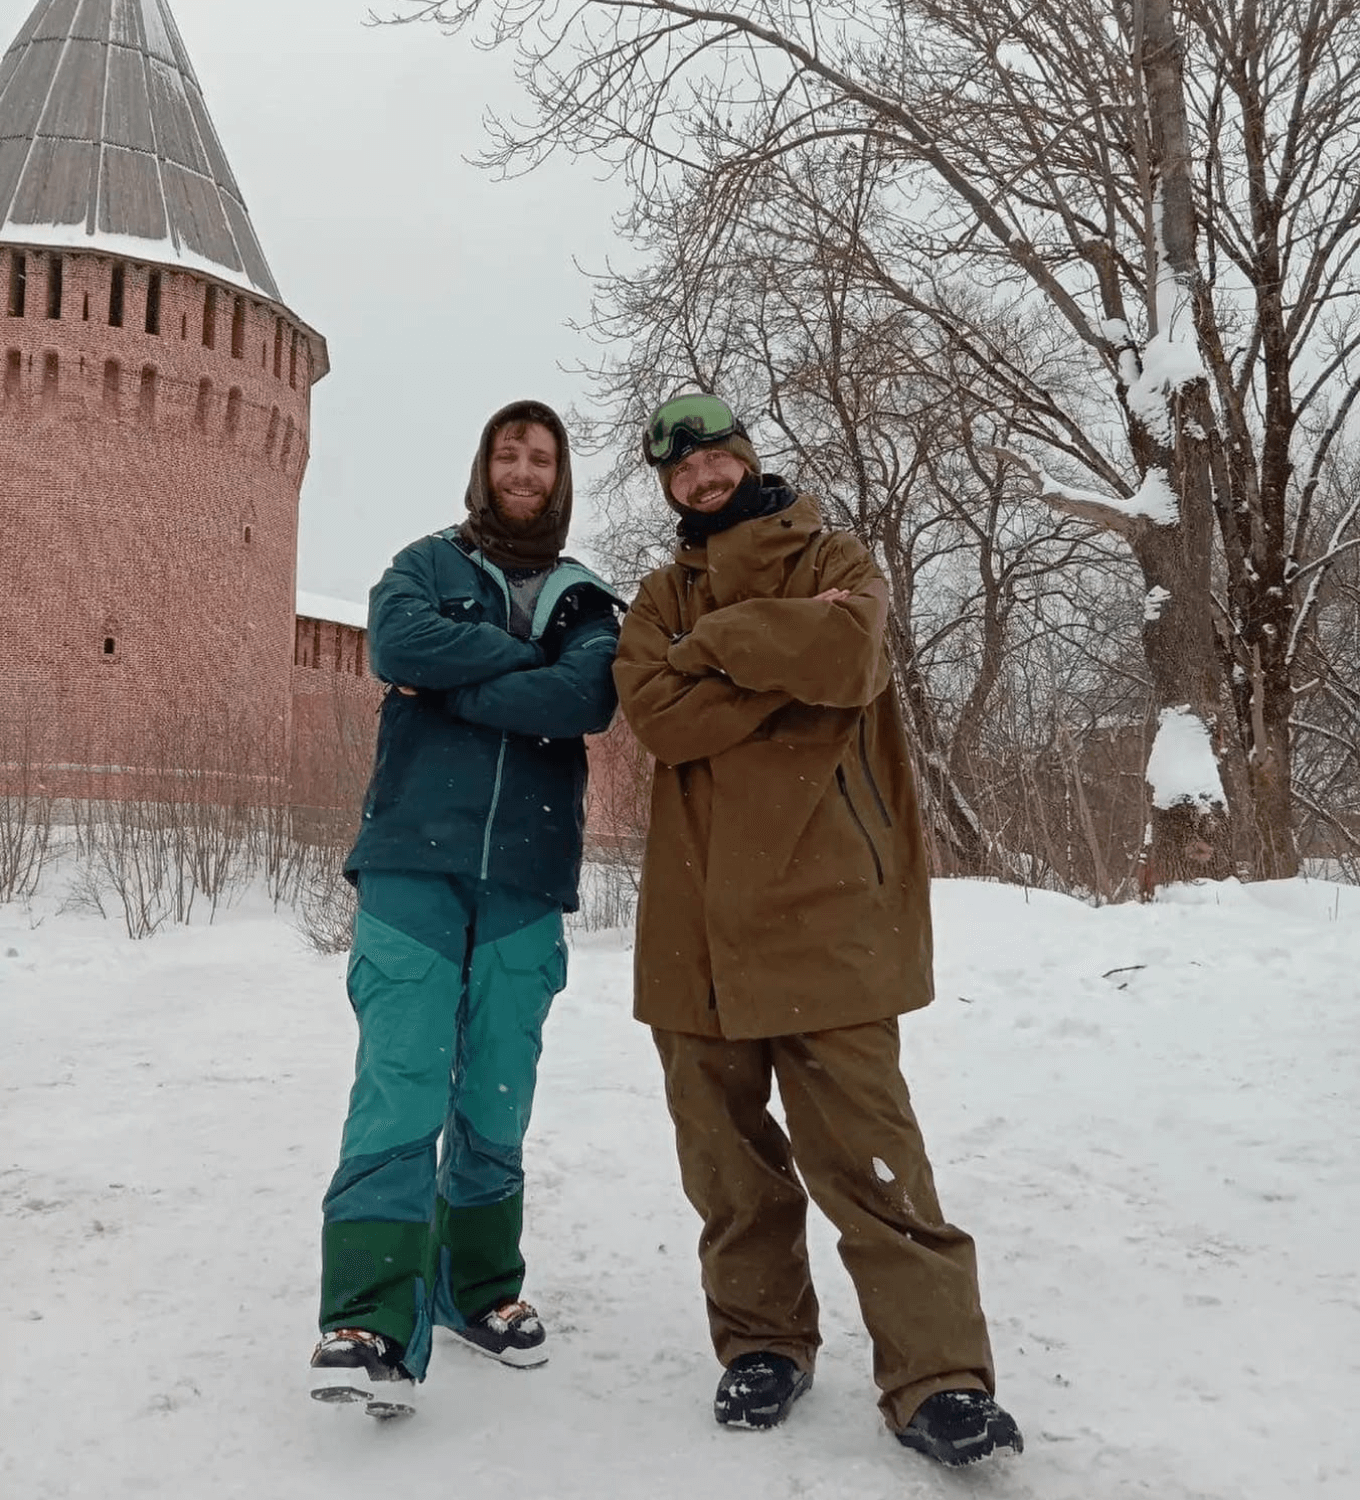 Иван Олейников открыл прокат лыж и сноубордов